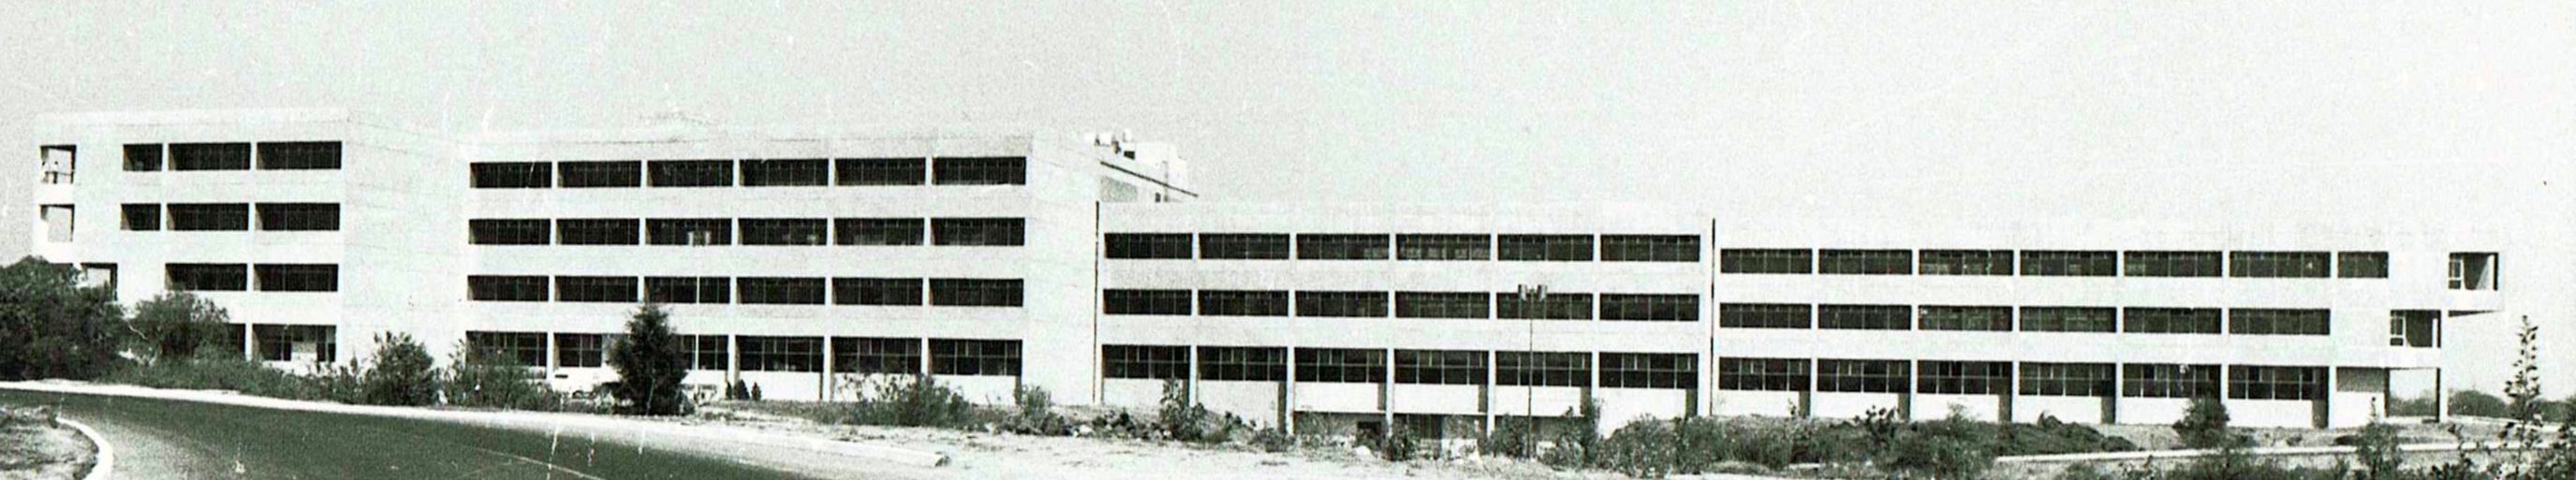 CONACYT Headquarters at UNAM Mexico City. 1980 Under Construction.